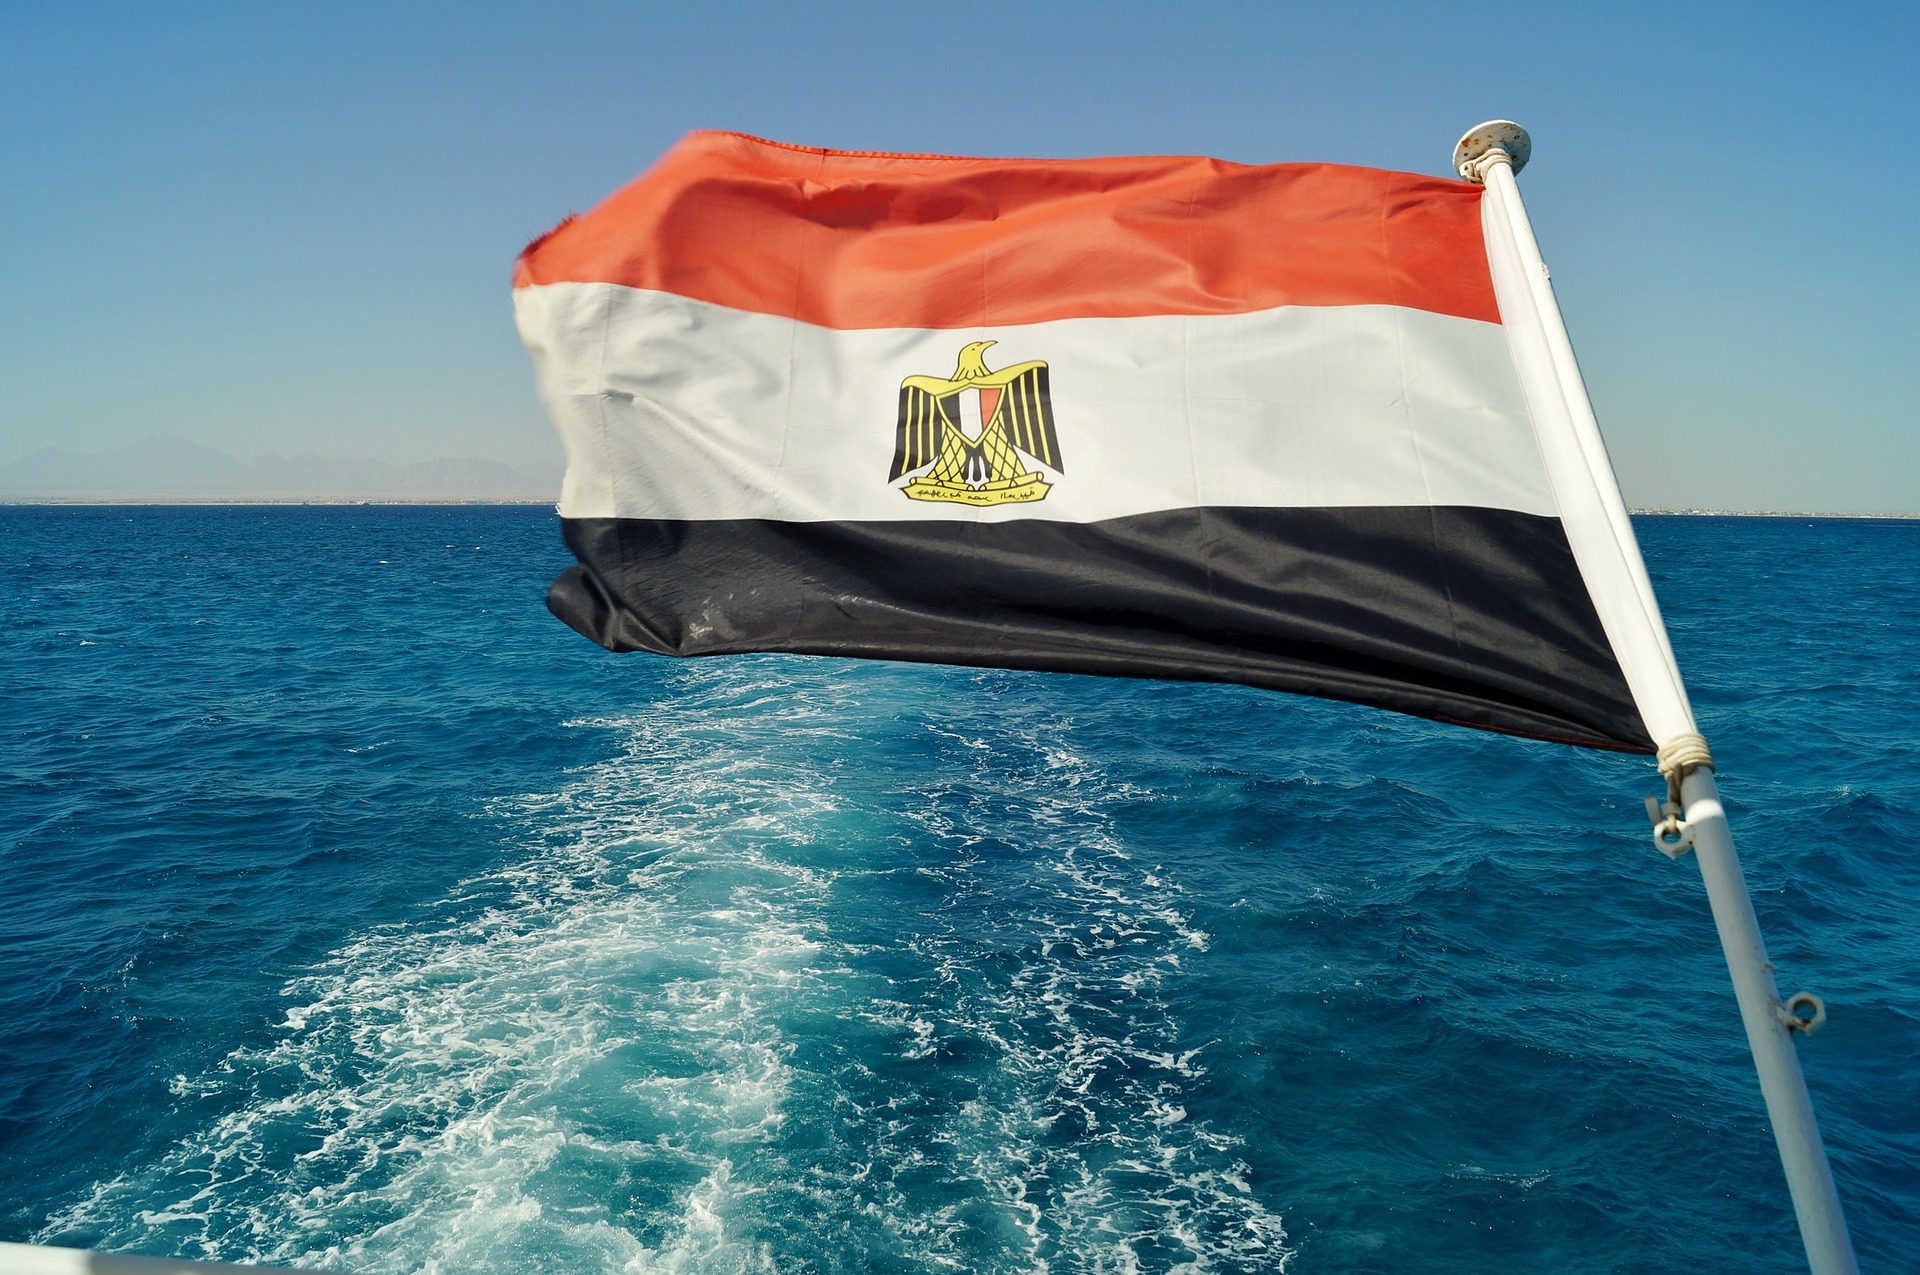 TEZ Tour вернет деньги за туры в Египет в связи с отменой полетов IFly до 19 декабря